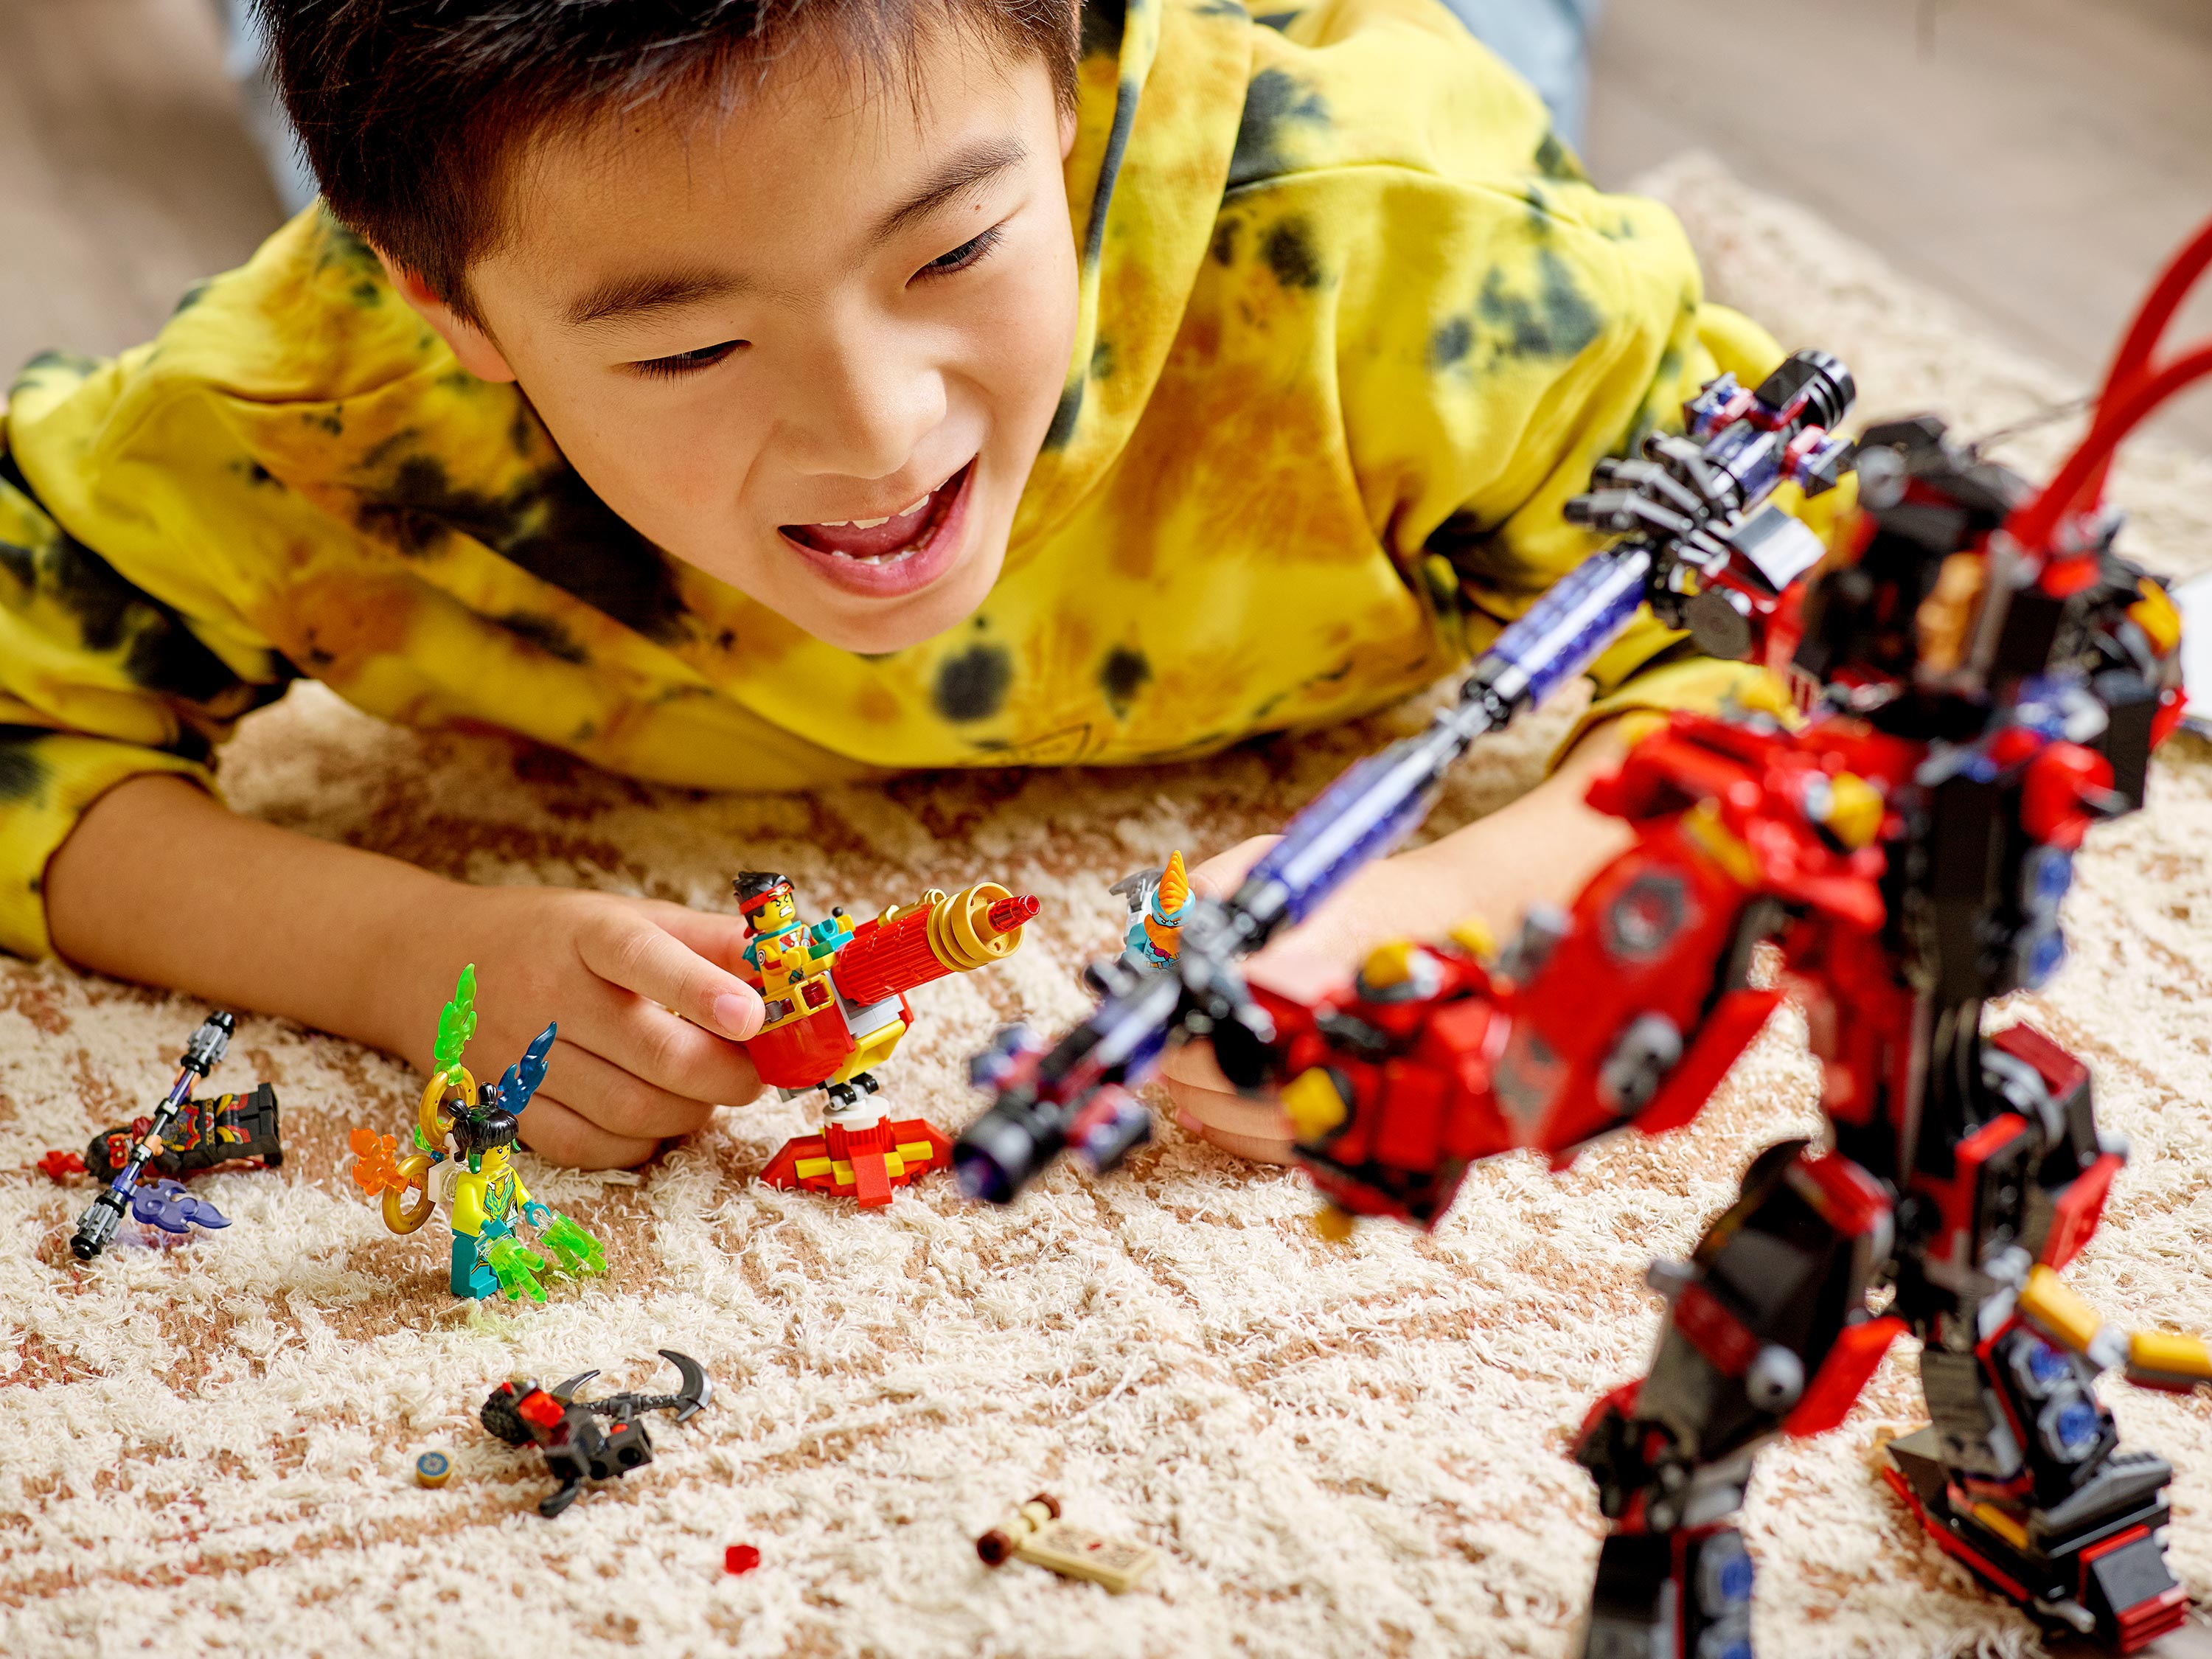 Конструктор LEGO Monkie Kid 80033 Злой Робот Макаки